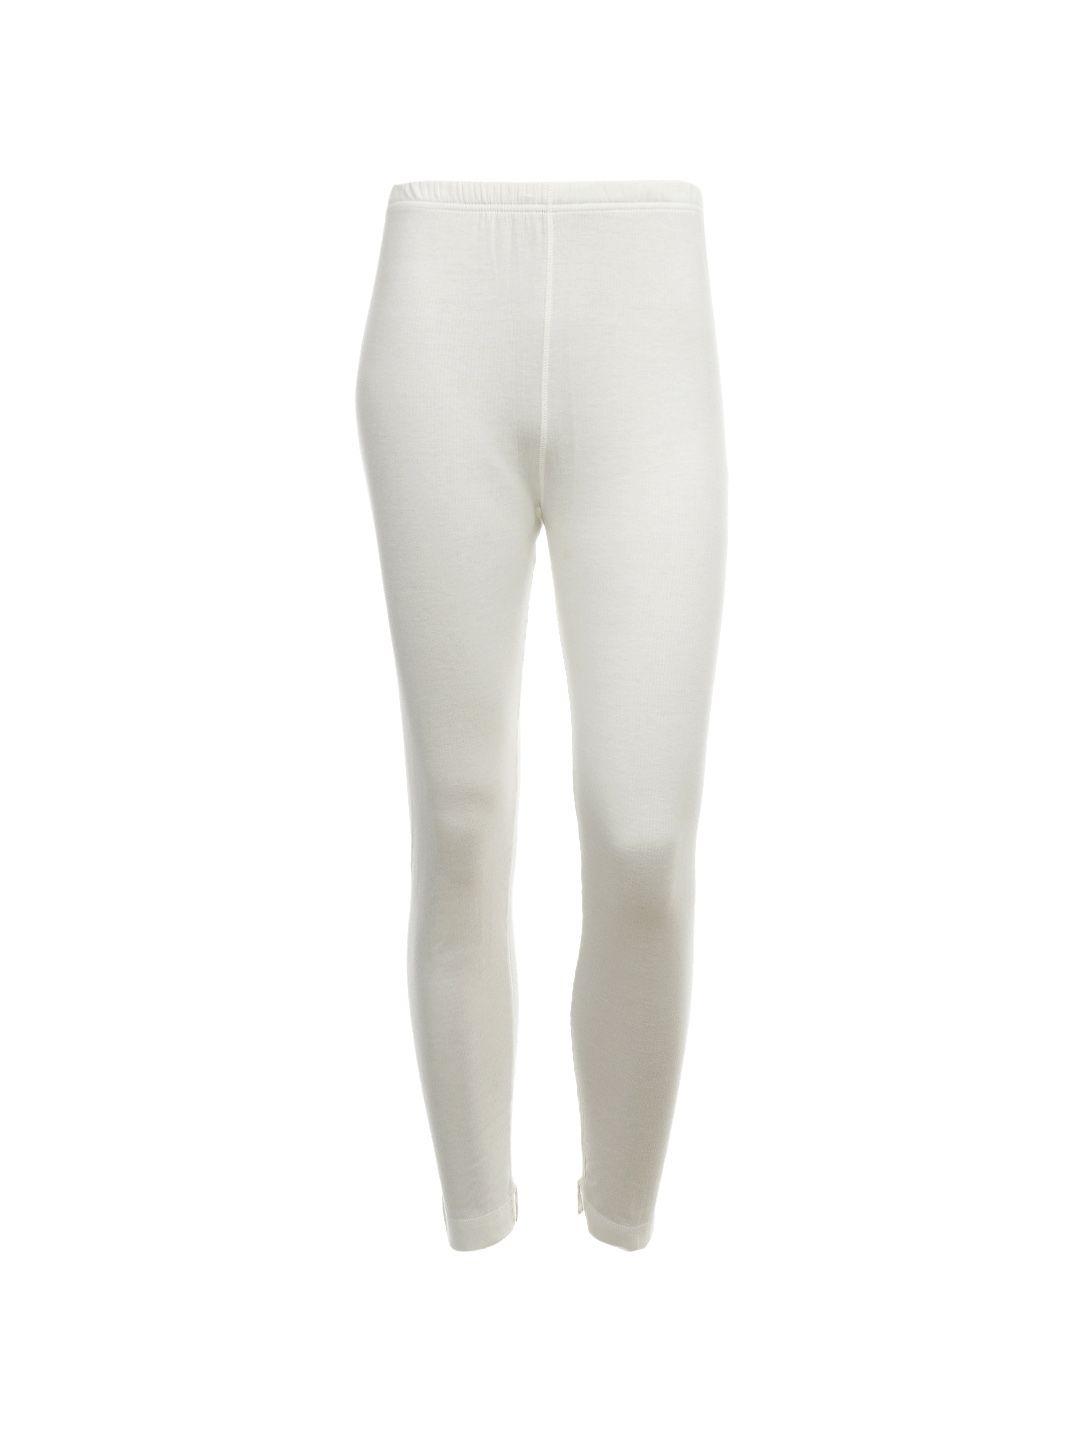 jockey women cream thermal leggings